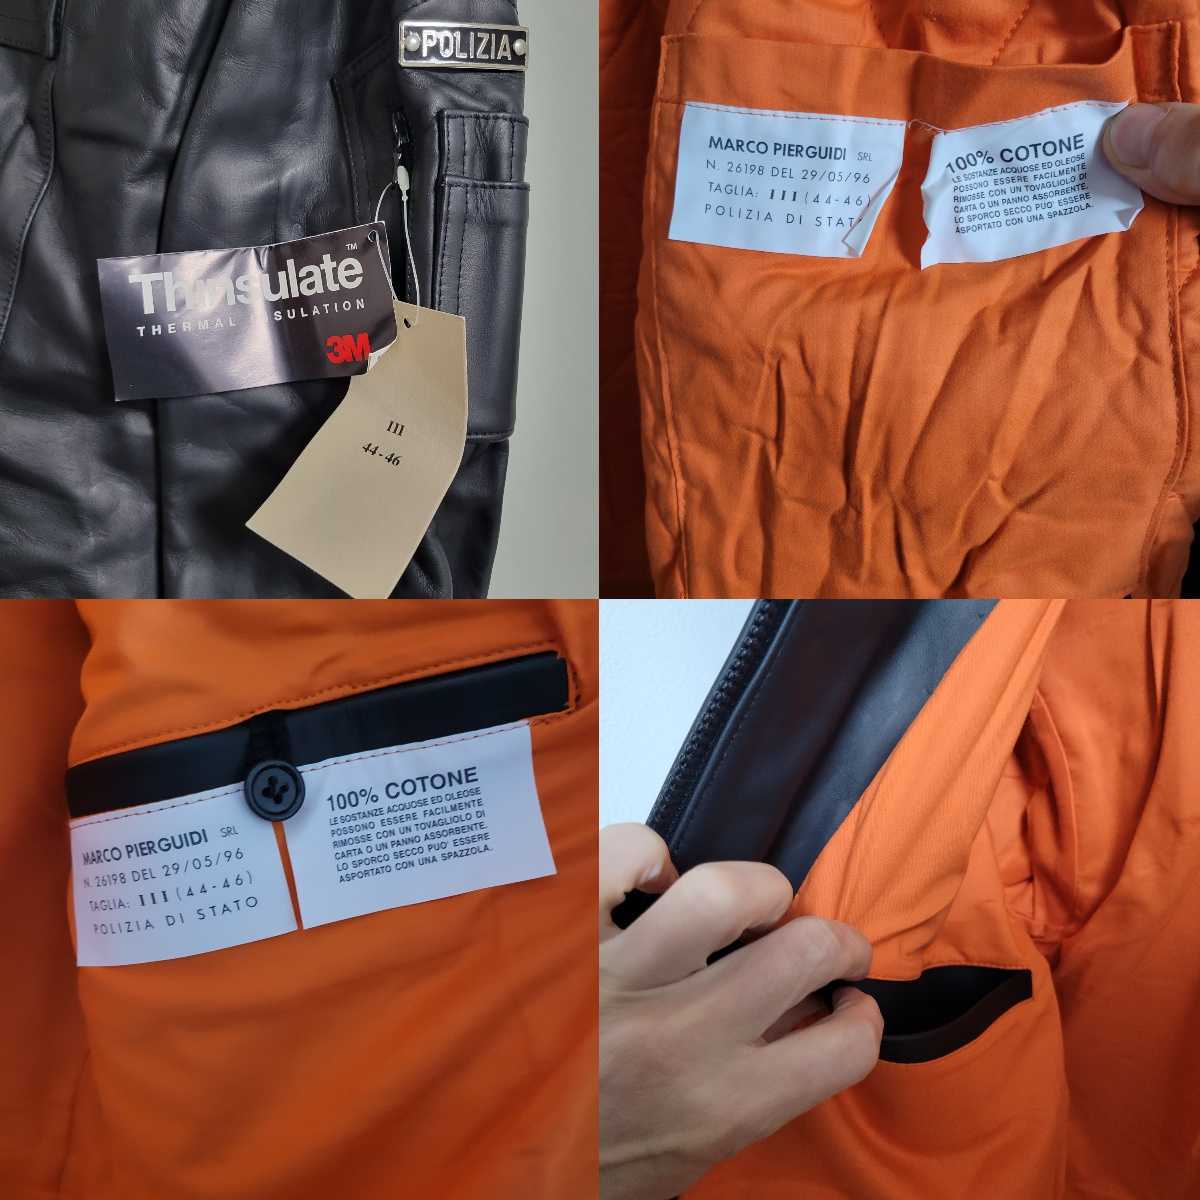 日本製 【デッドストック】90s ポリス 革 コート レザージャケット イタリア警察 レザージャケット